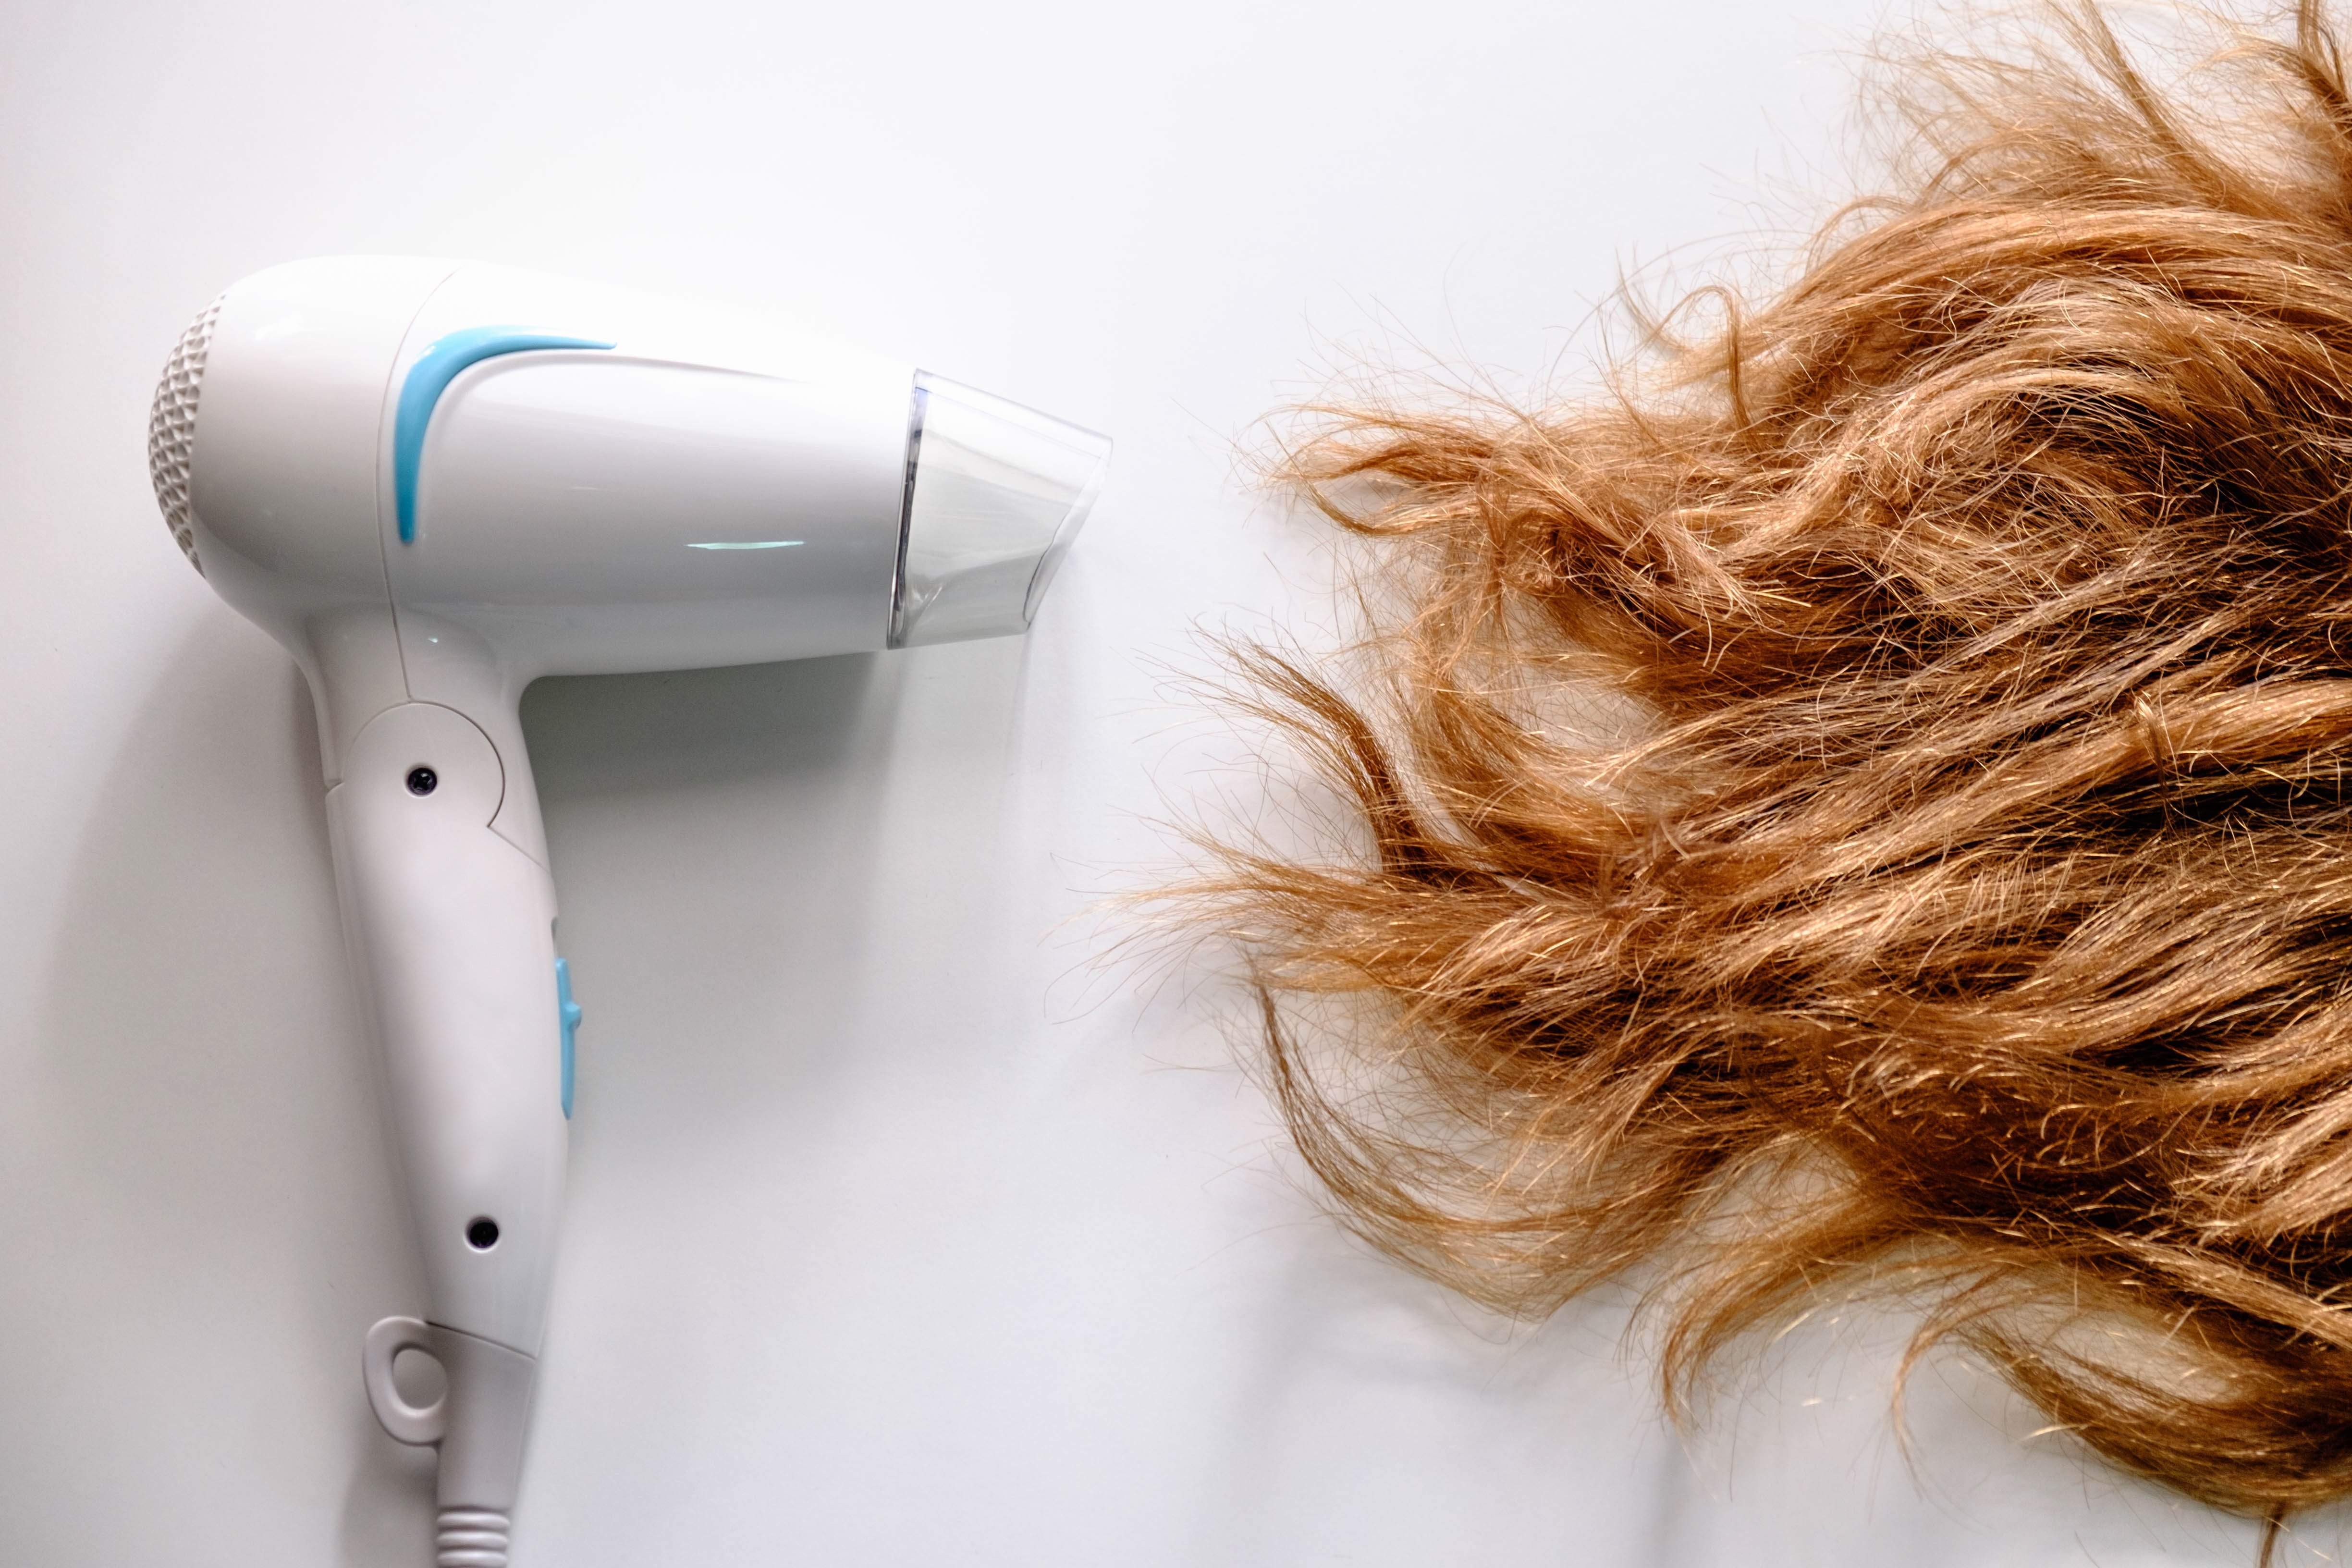 Secador de pelo junto a cabello rubio dañado. | Foto: Shutterstock